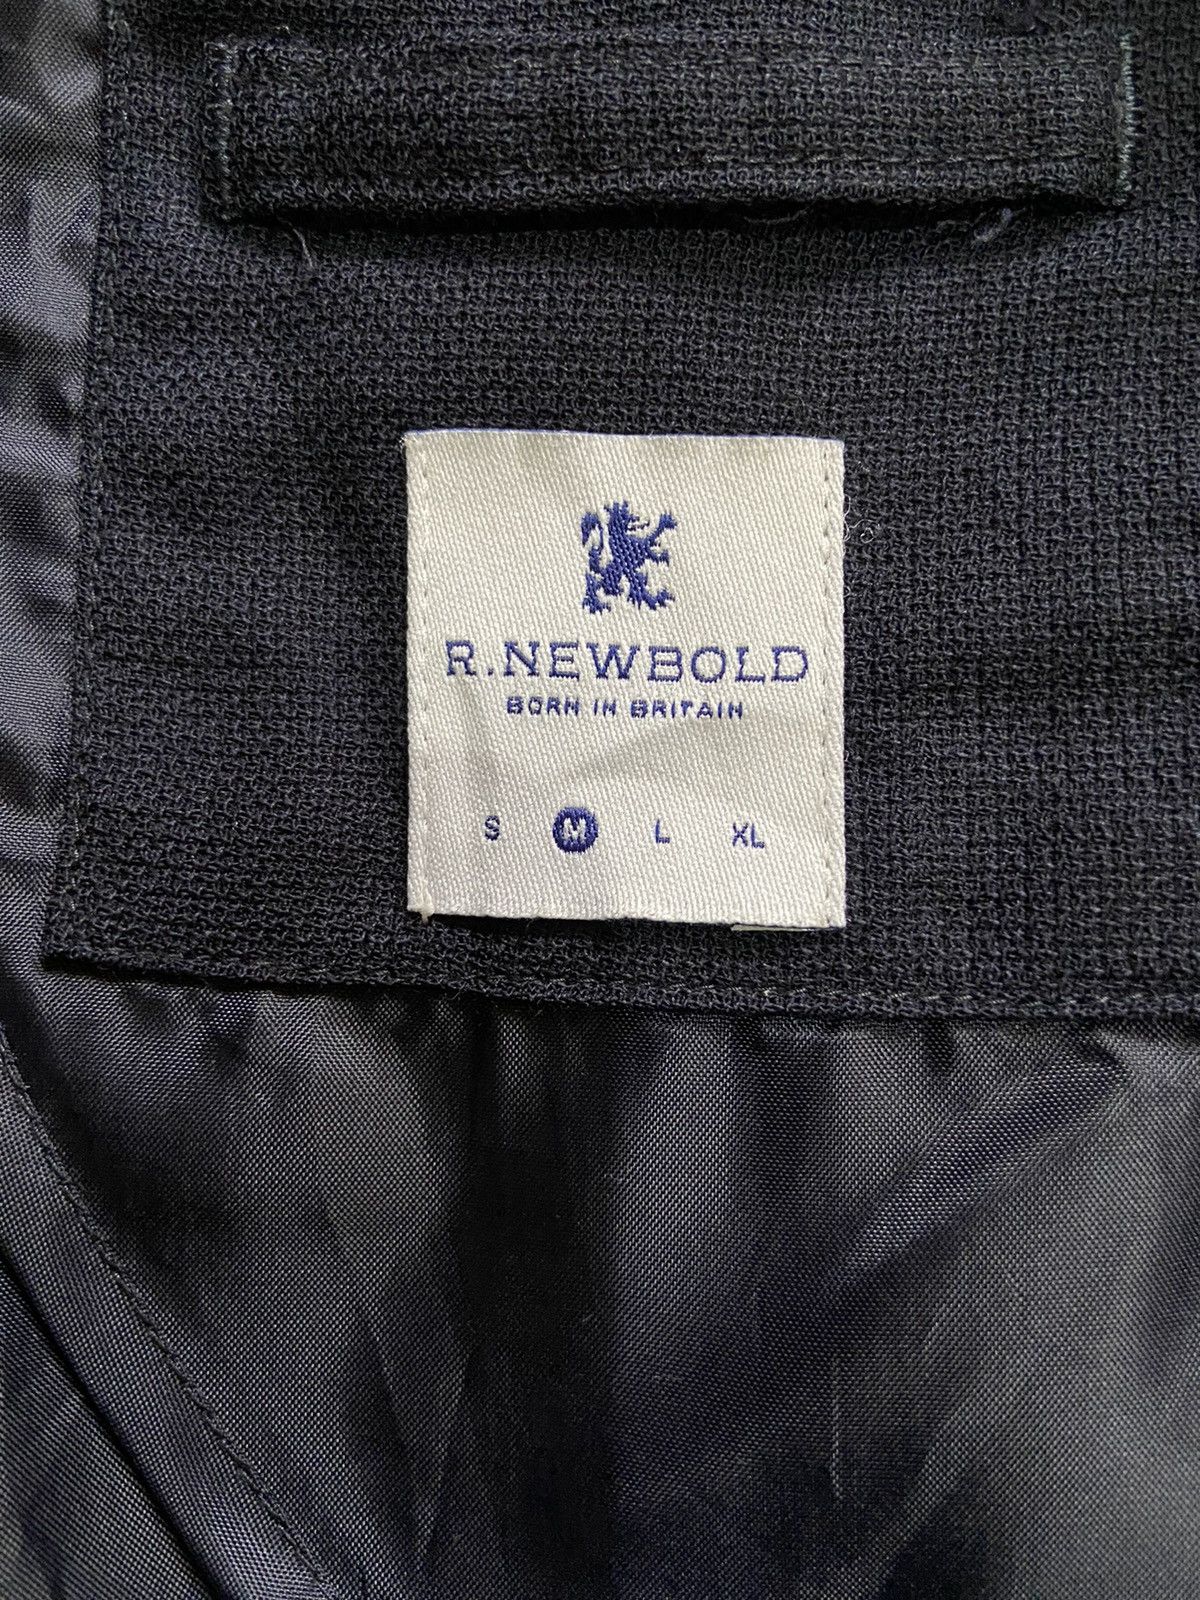 R.Newbold Blazer Jacket - 3